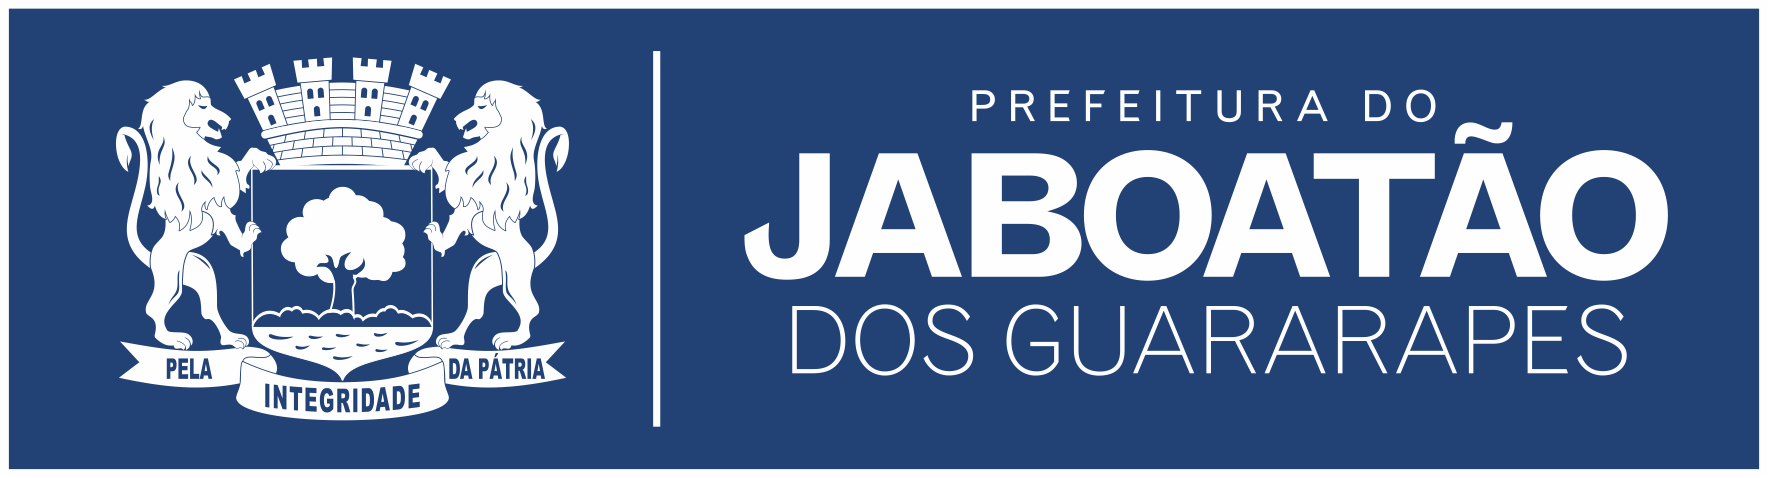 logo_jab